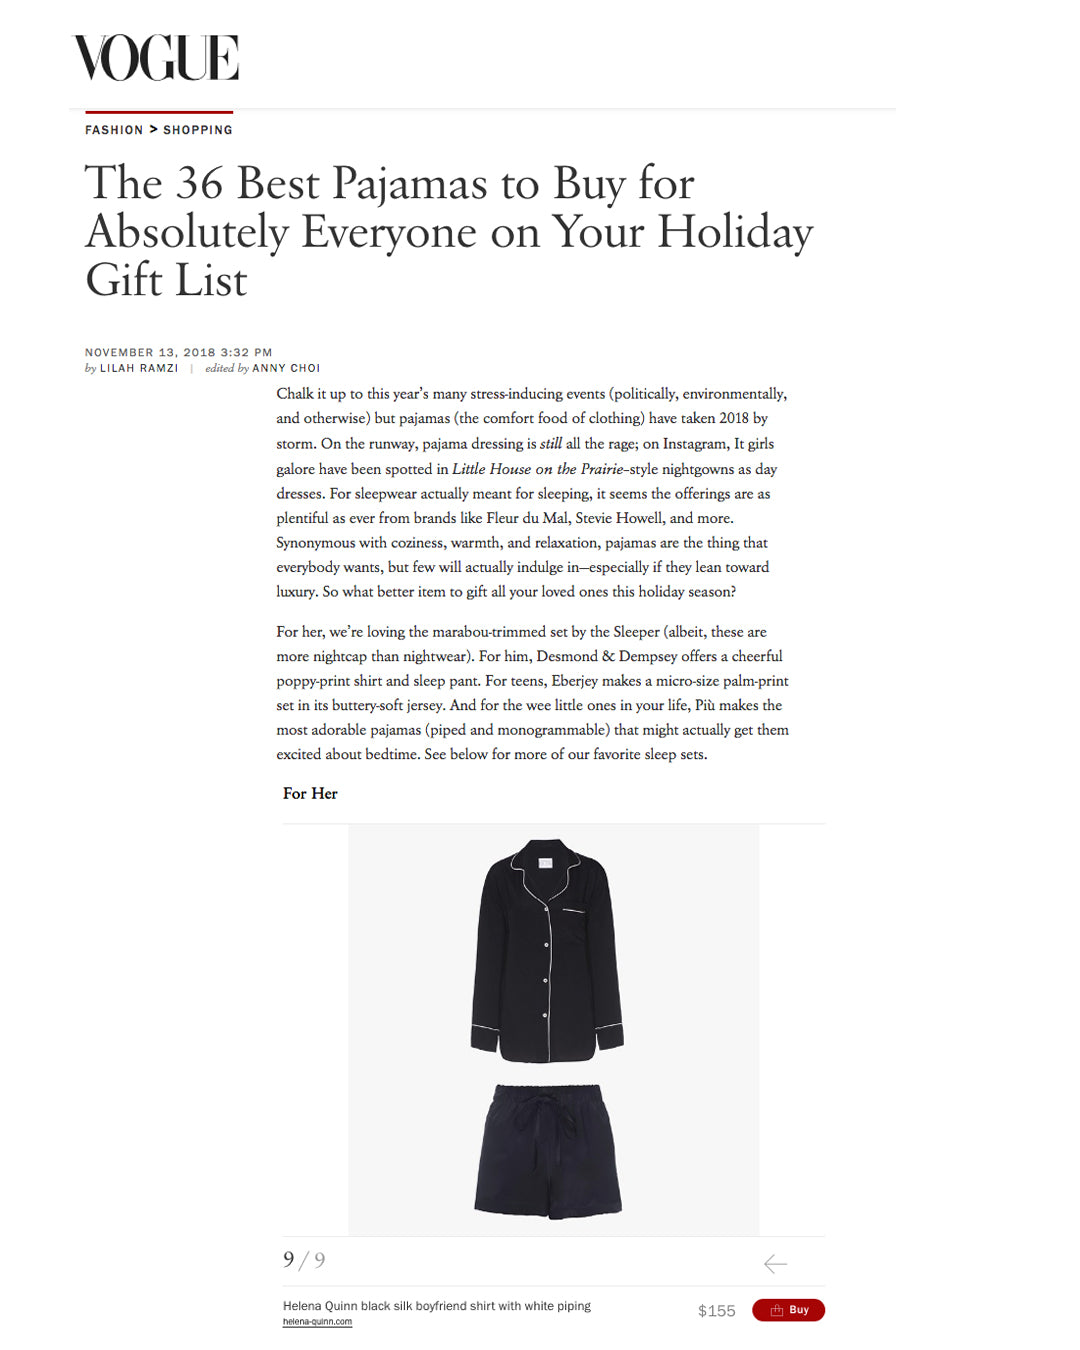 Helena Quinn / /  Vogue Magazine / / Black Silk Boyfriend Shirt